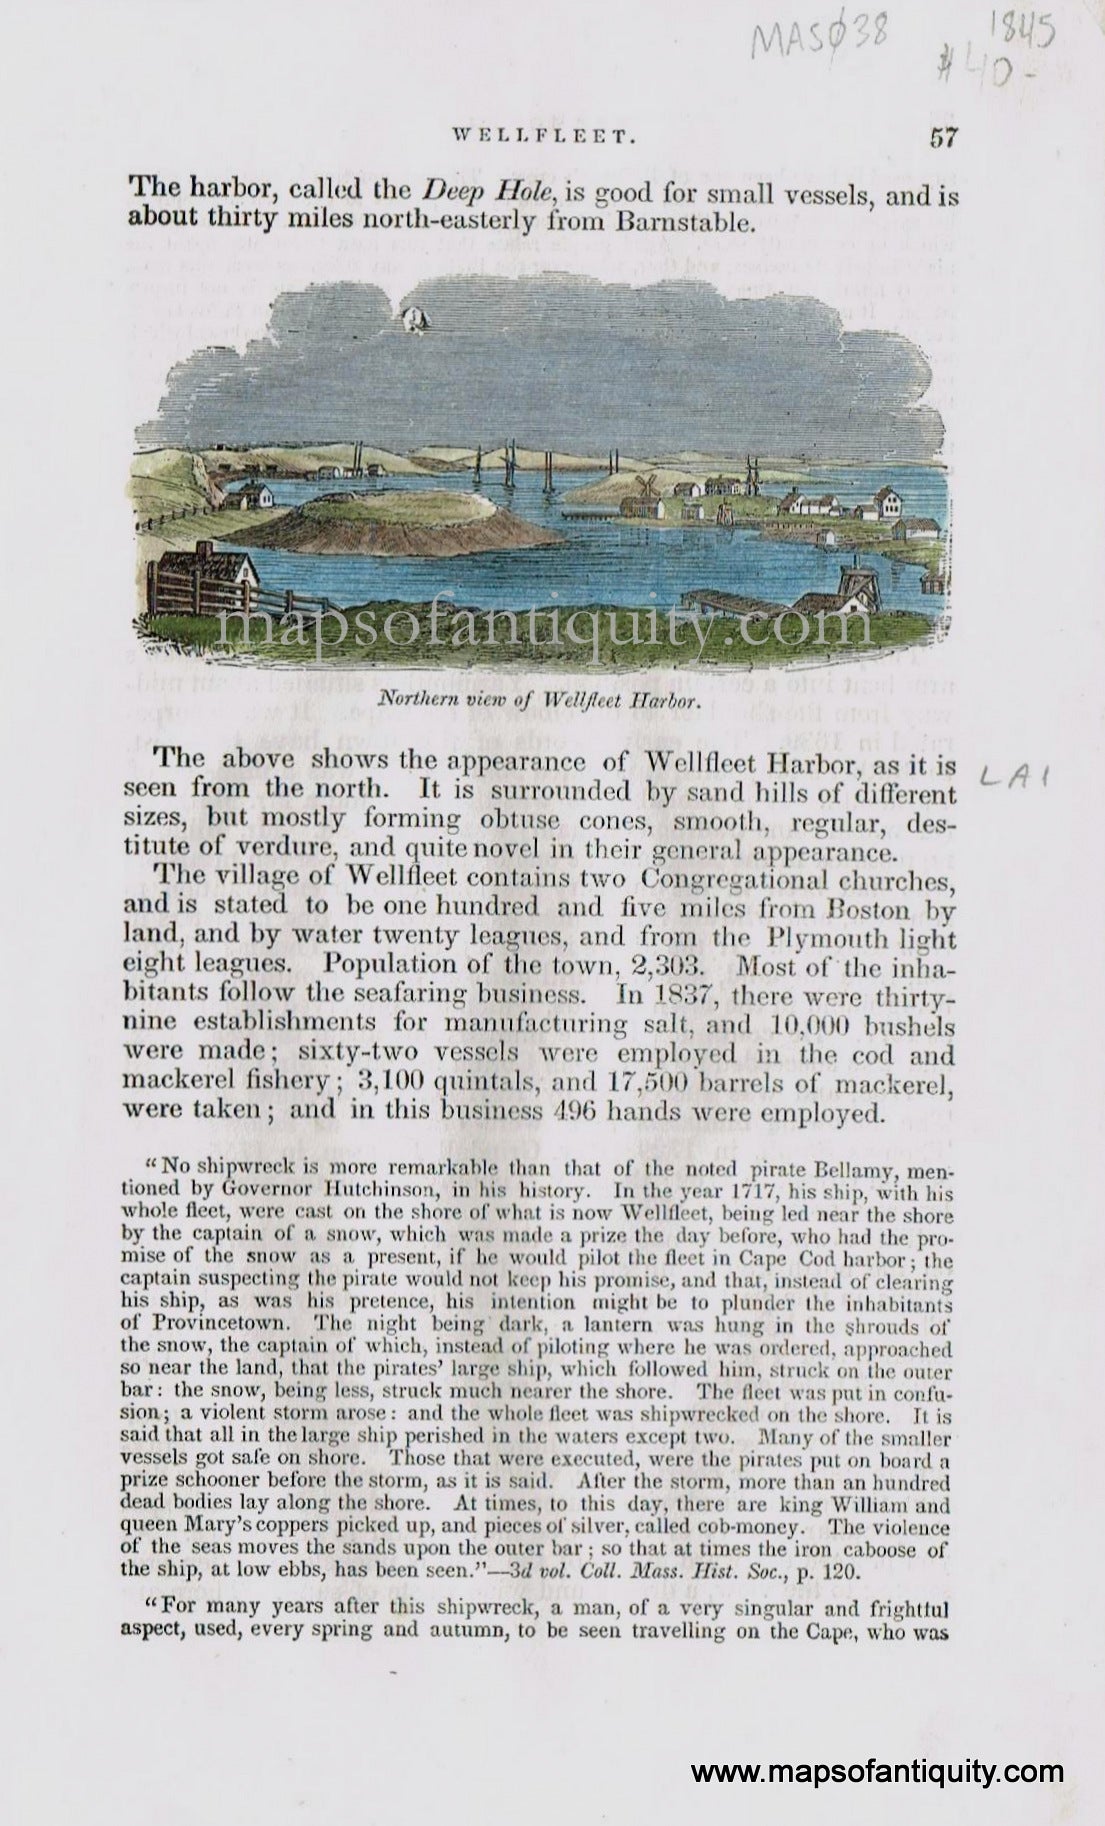 1845 - Northern View of Wellfleet Harbor - Antique Print